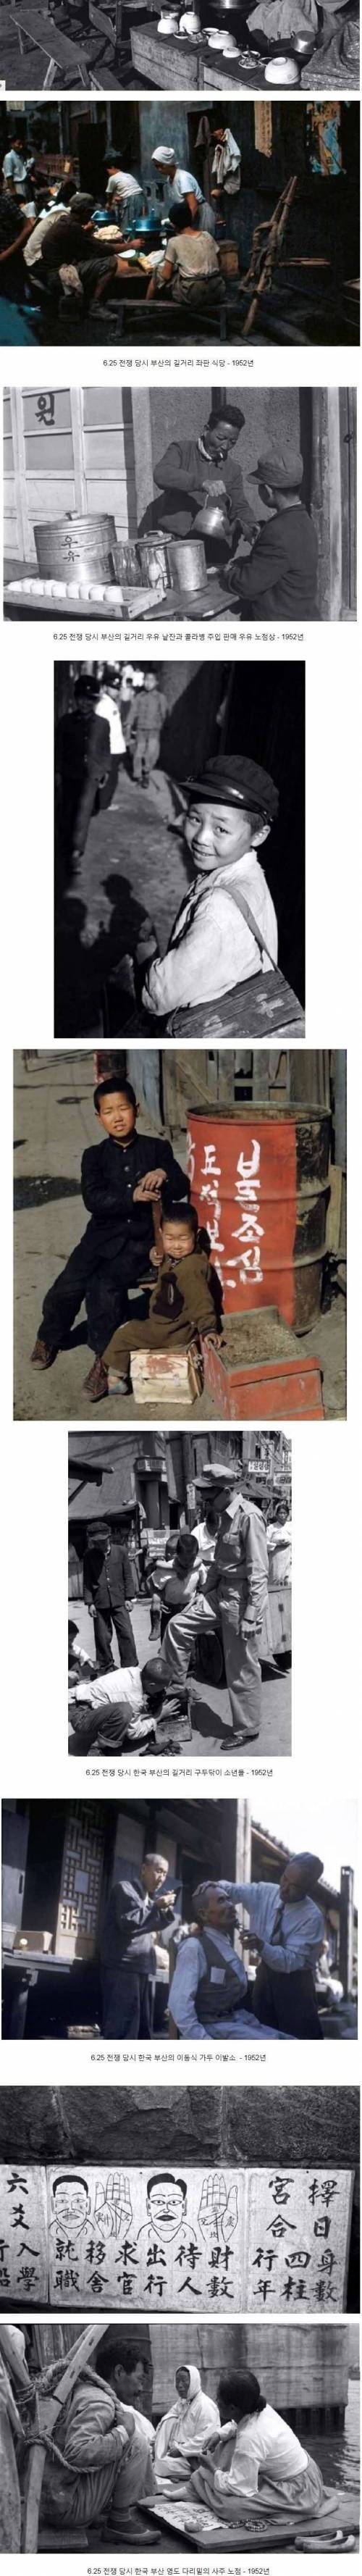 6.25 전쟁당시 한국의 노점상들.jpg